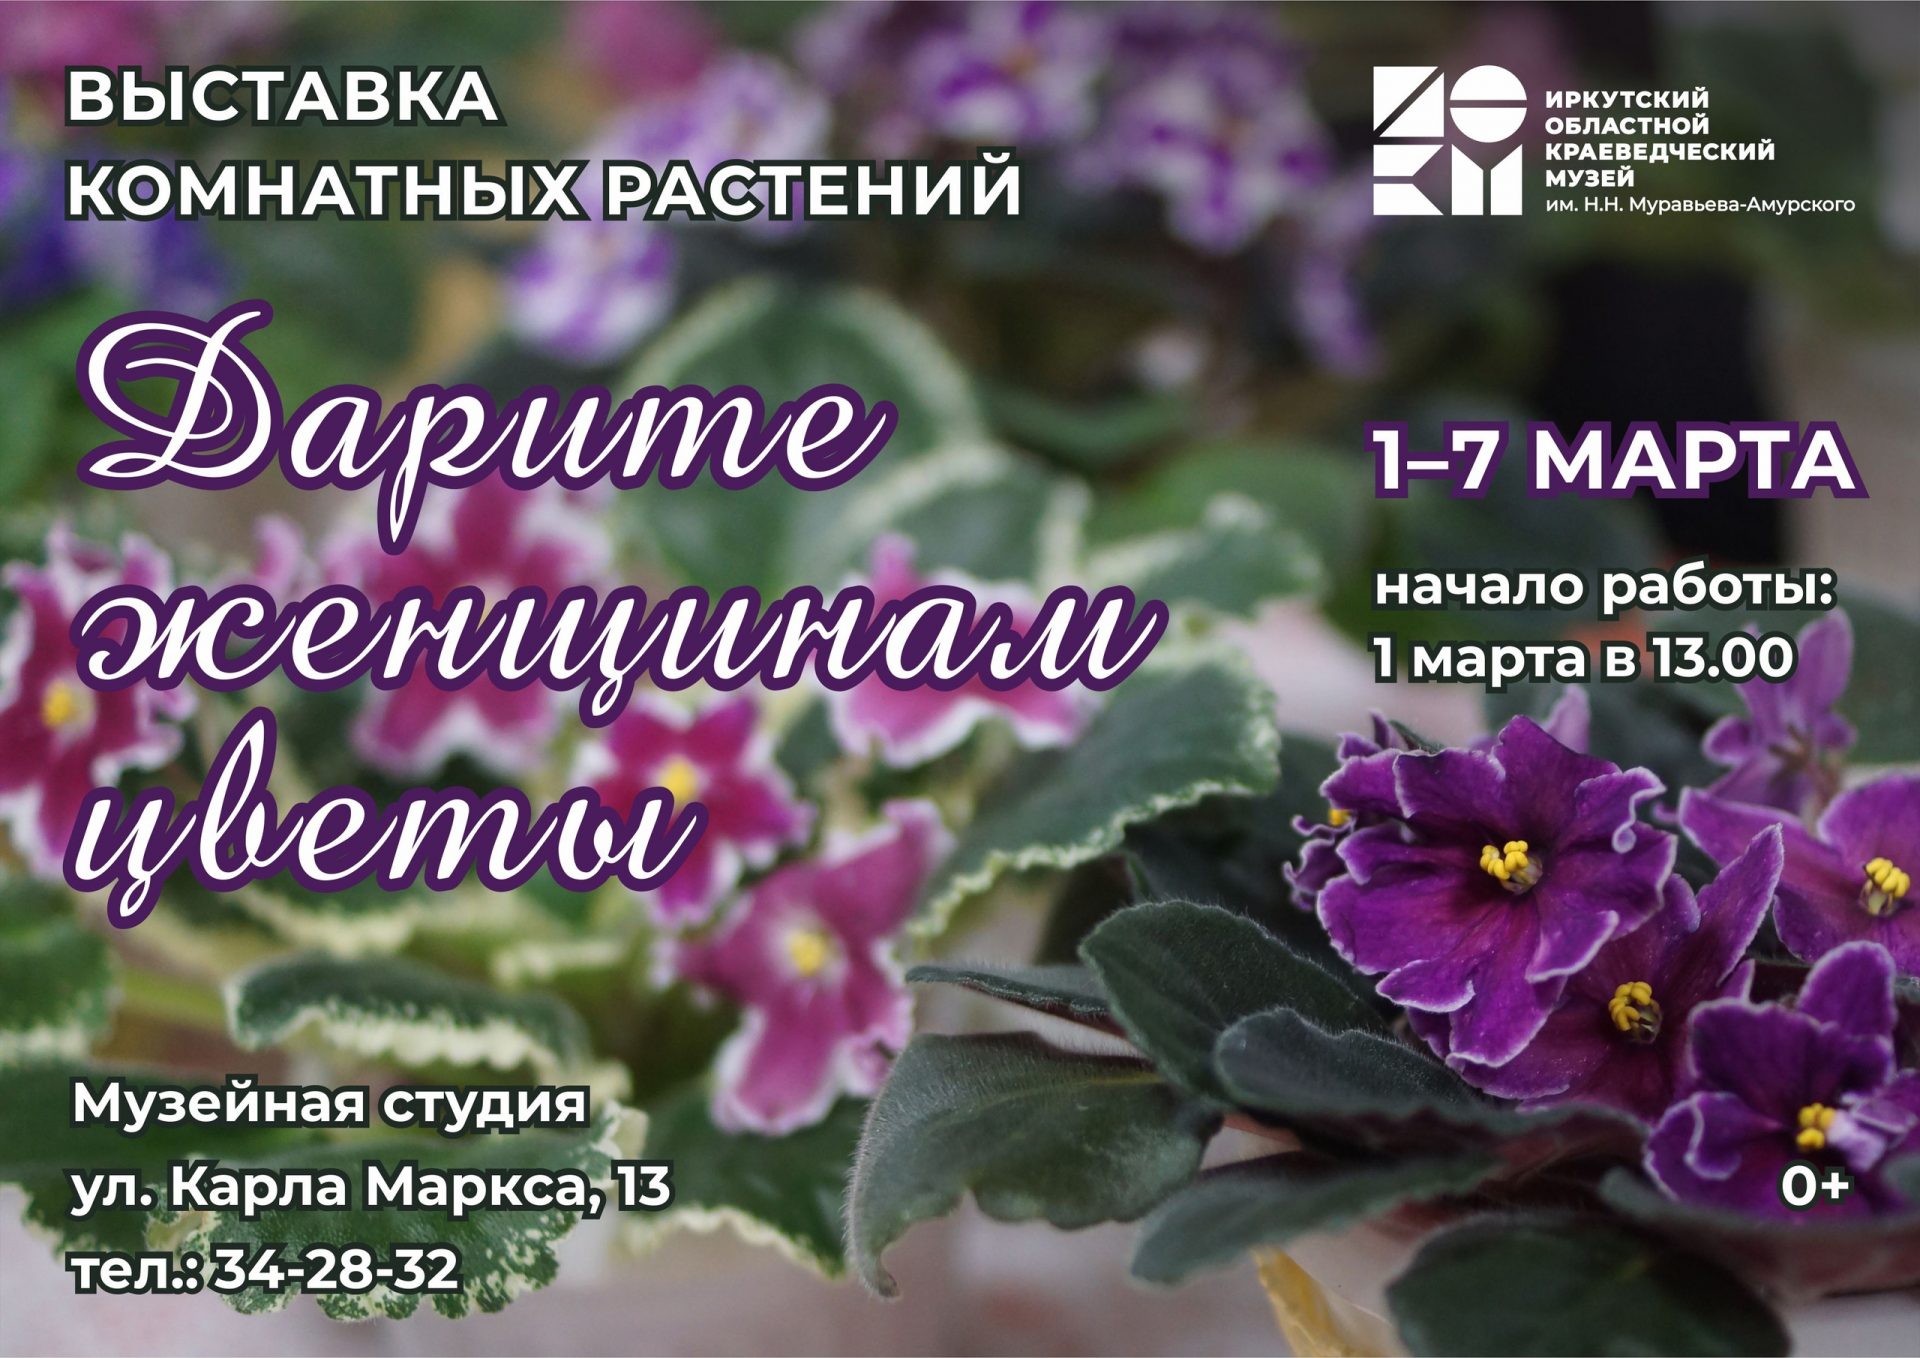 Выставка “Дарите женщинам цветы”